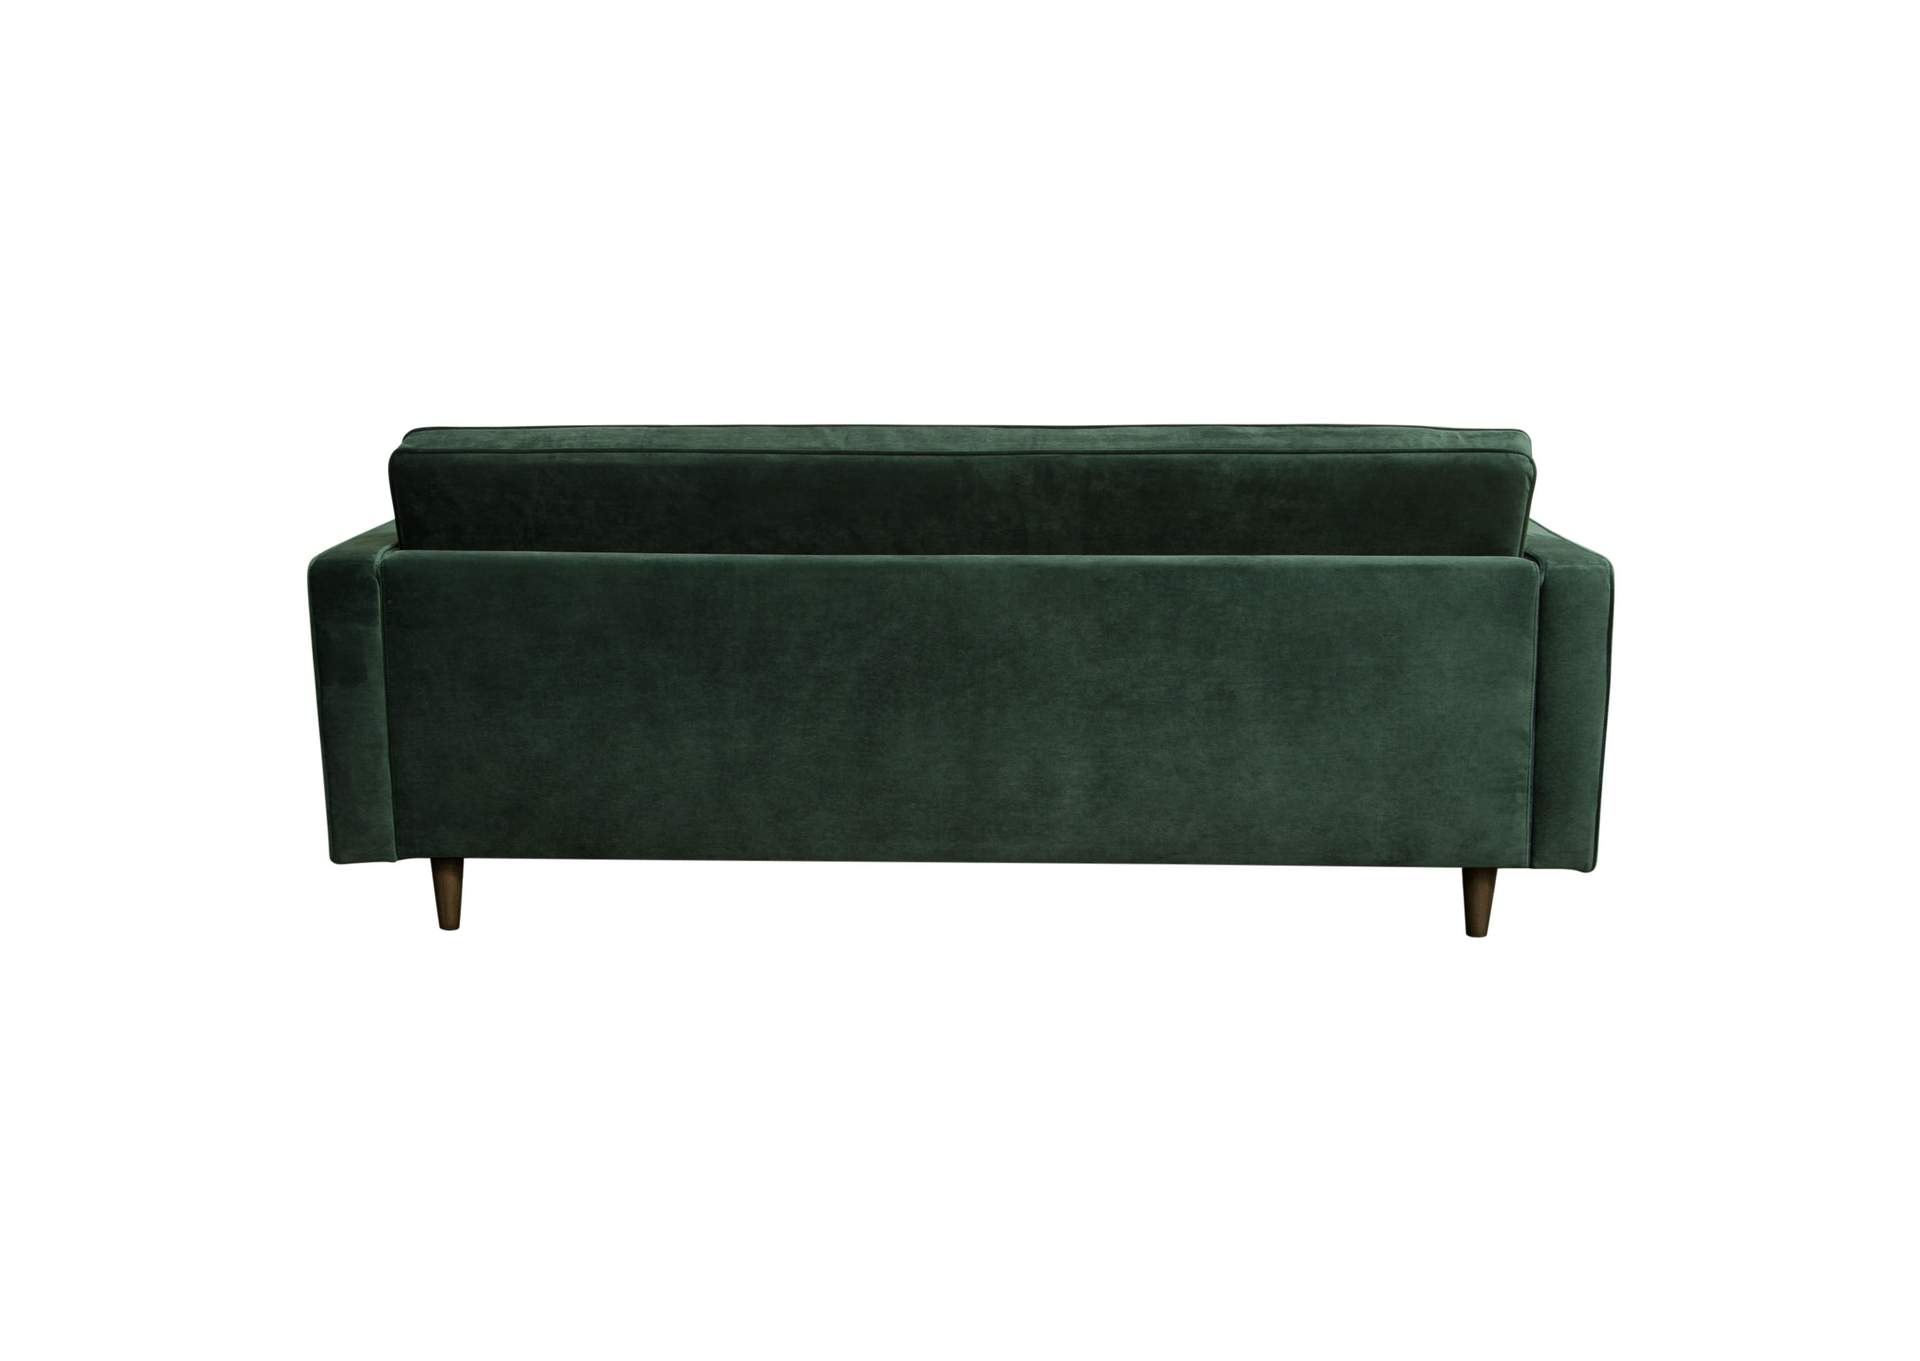 Juniper Tufted Sofa in Hunter Green Velvet with (2) Bolster Pillows by Diamond Sofa,Diamond Sofa